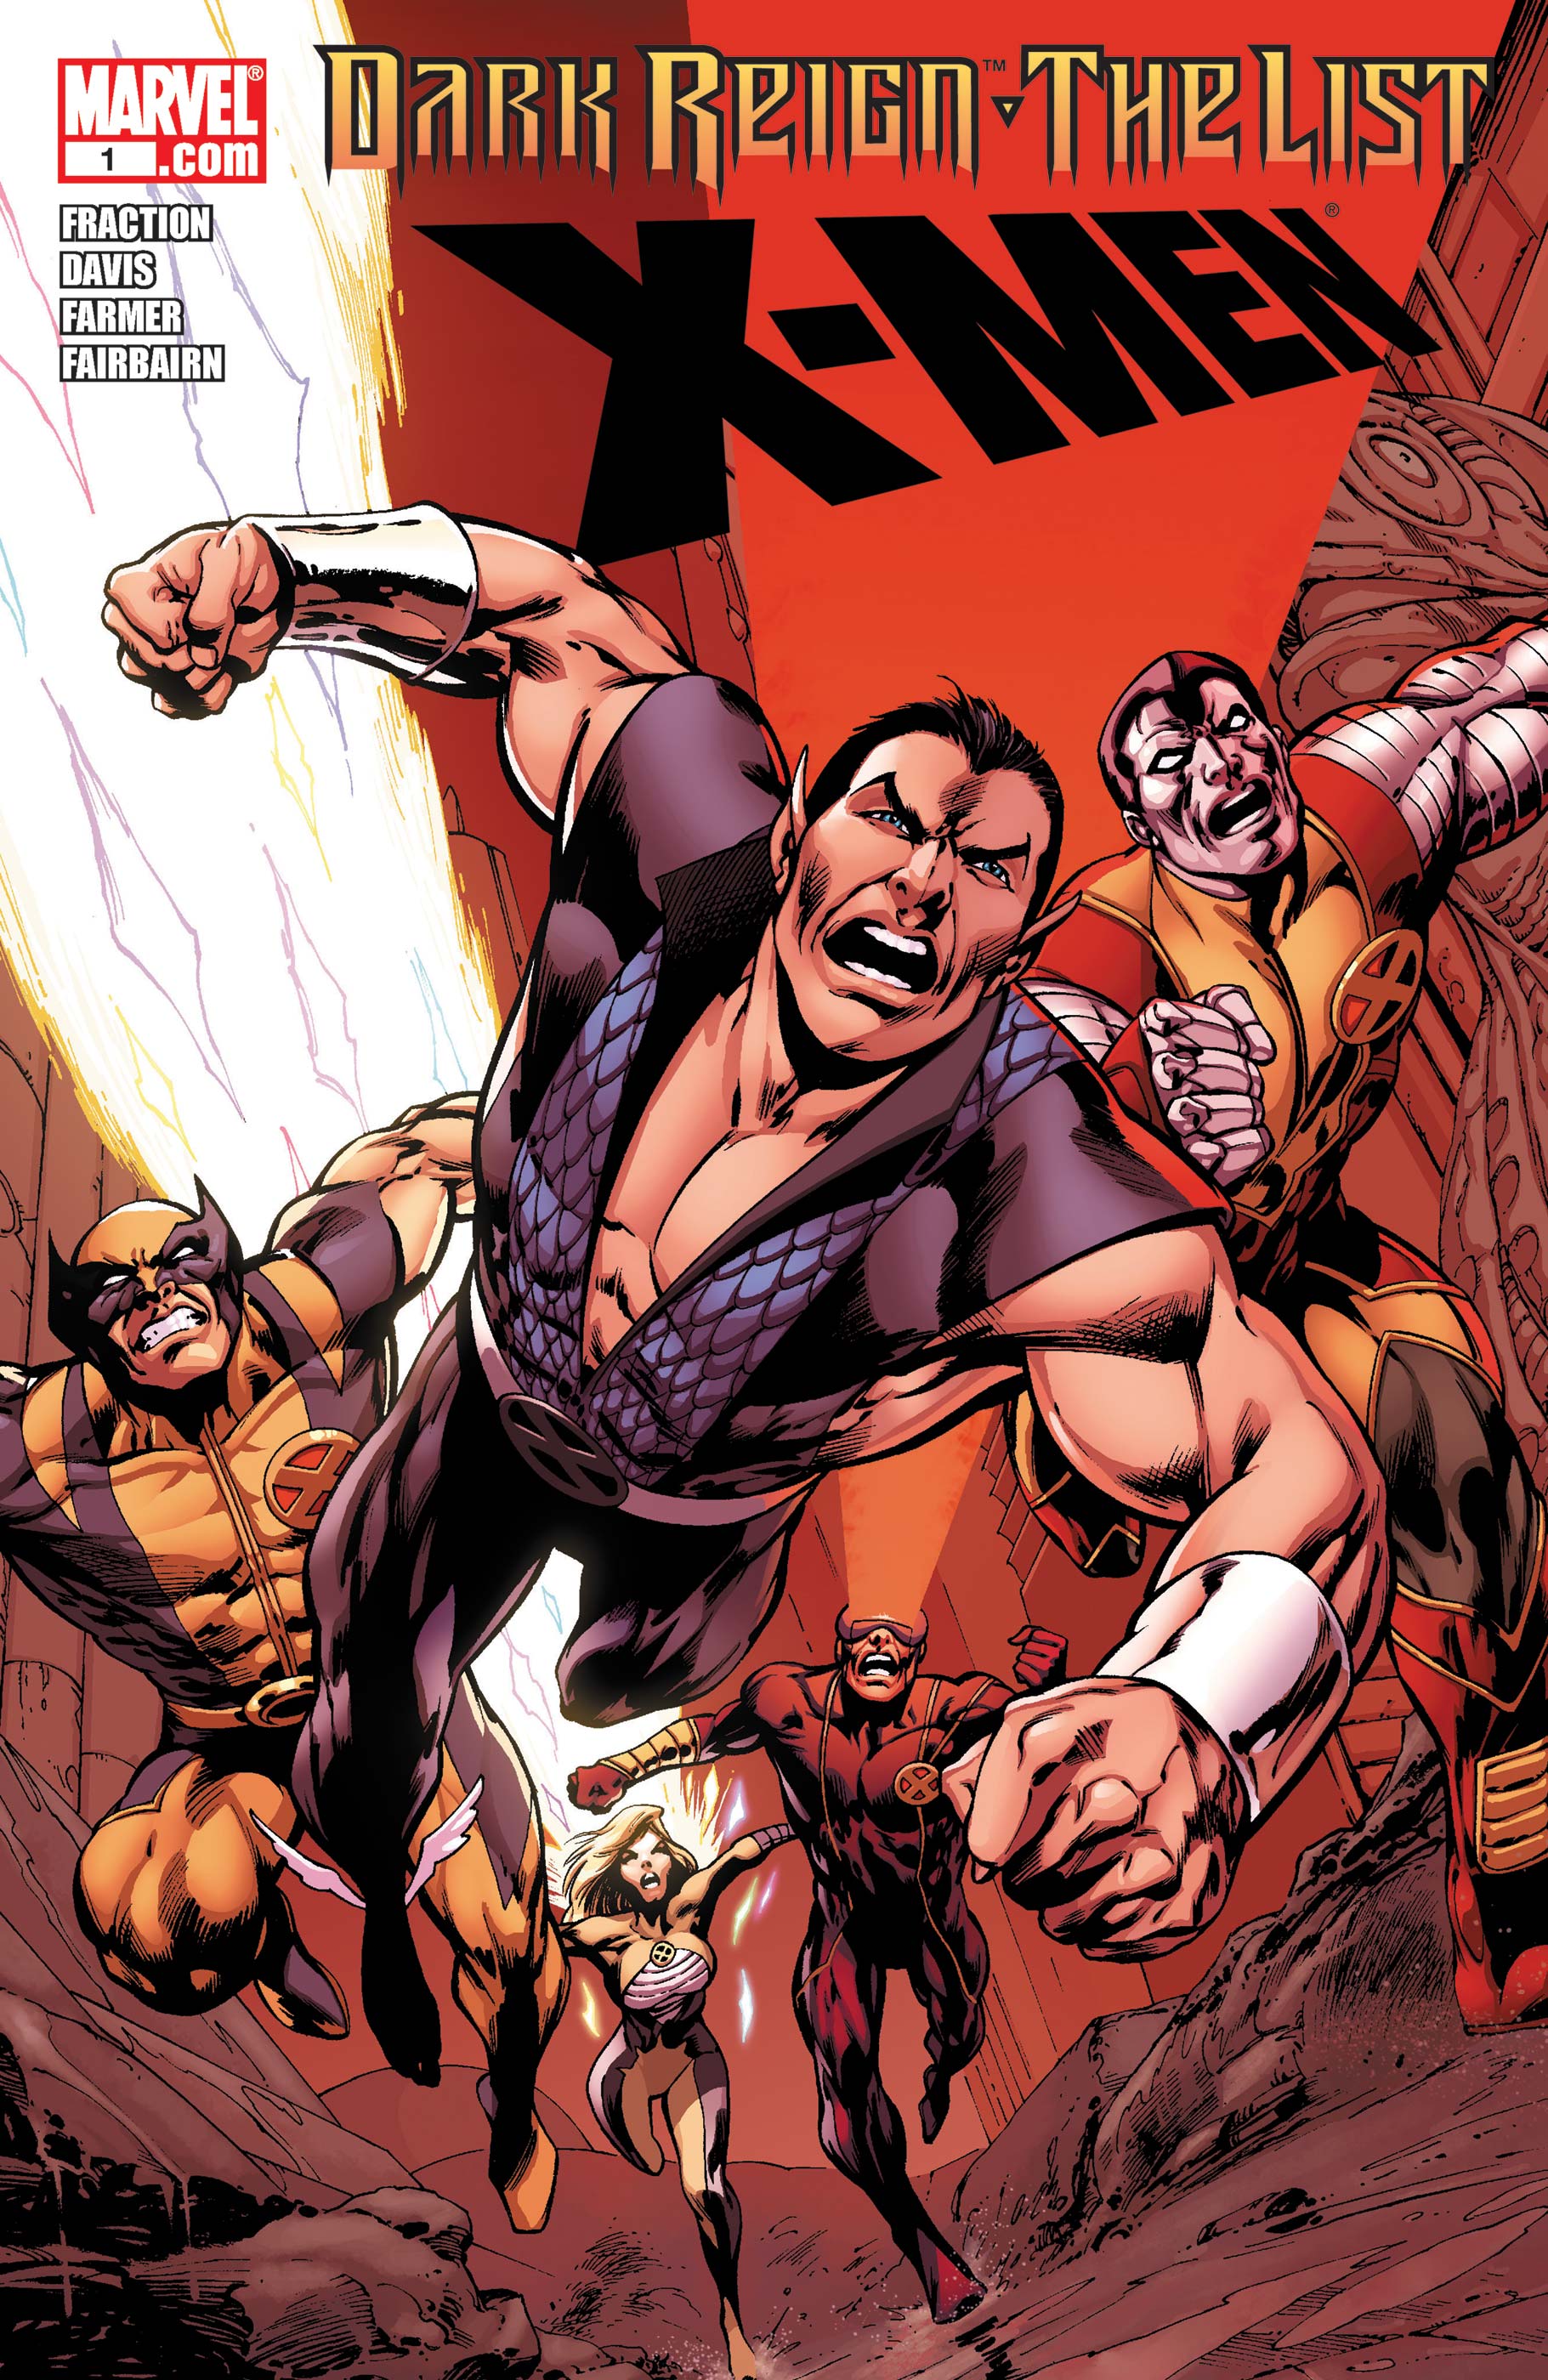 Dark Reign: The List - X-Men (2009) #1